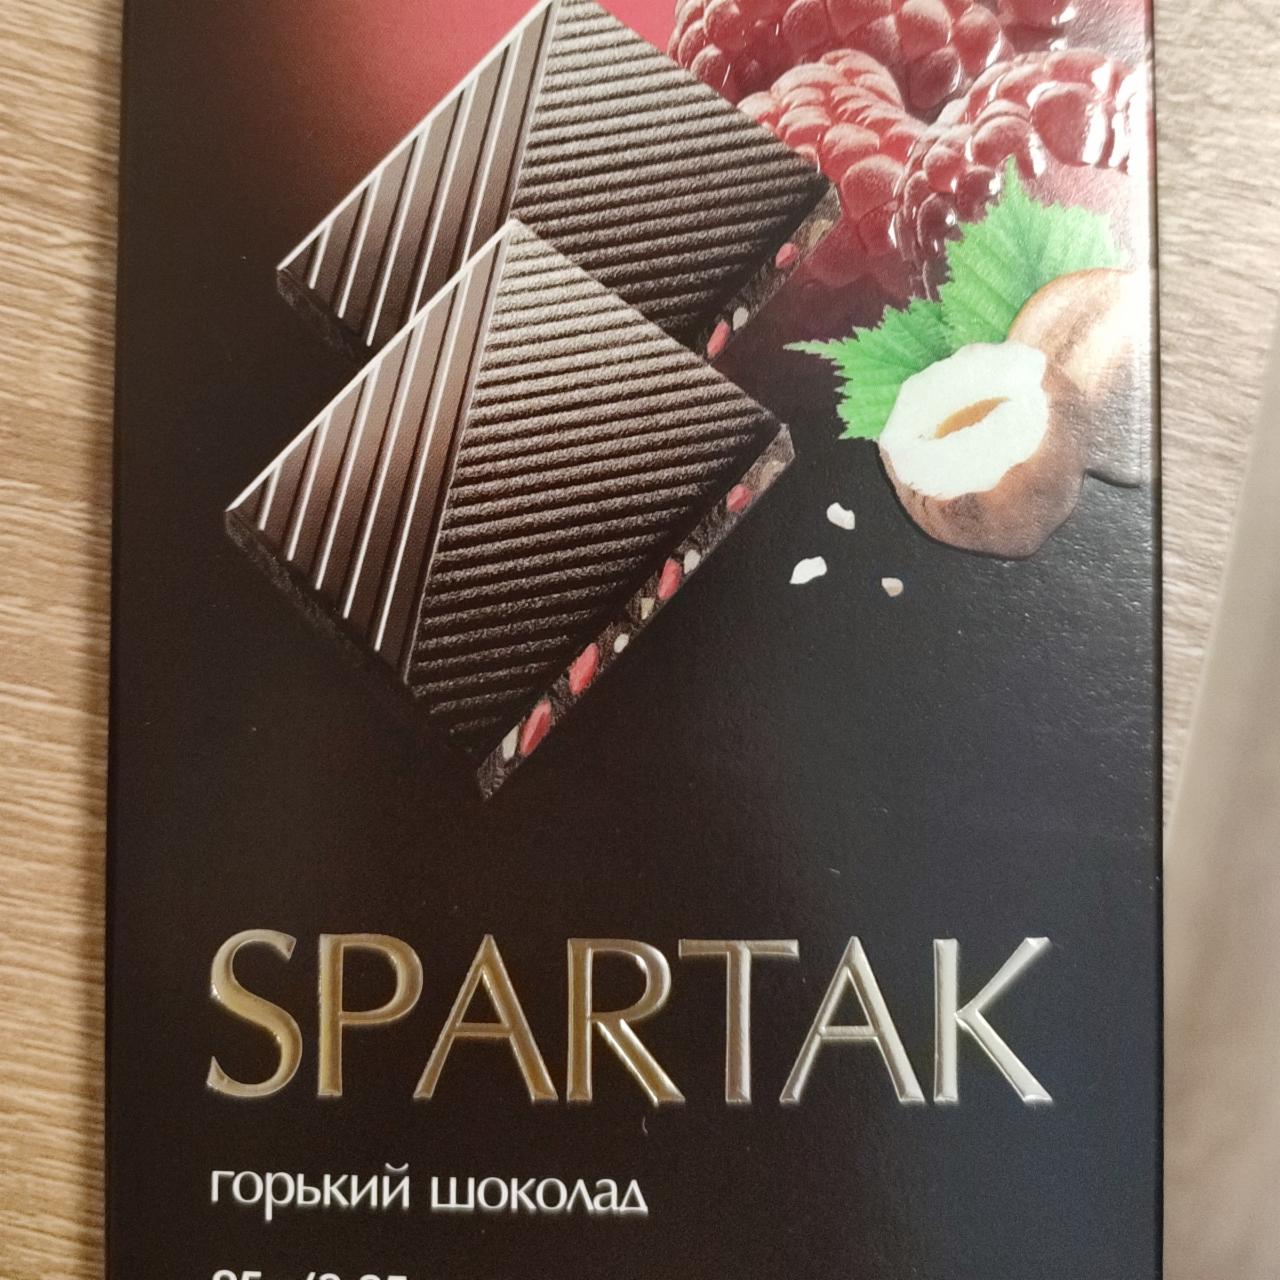 Фото - Горький шоколад с дробленным фундуком Спартак